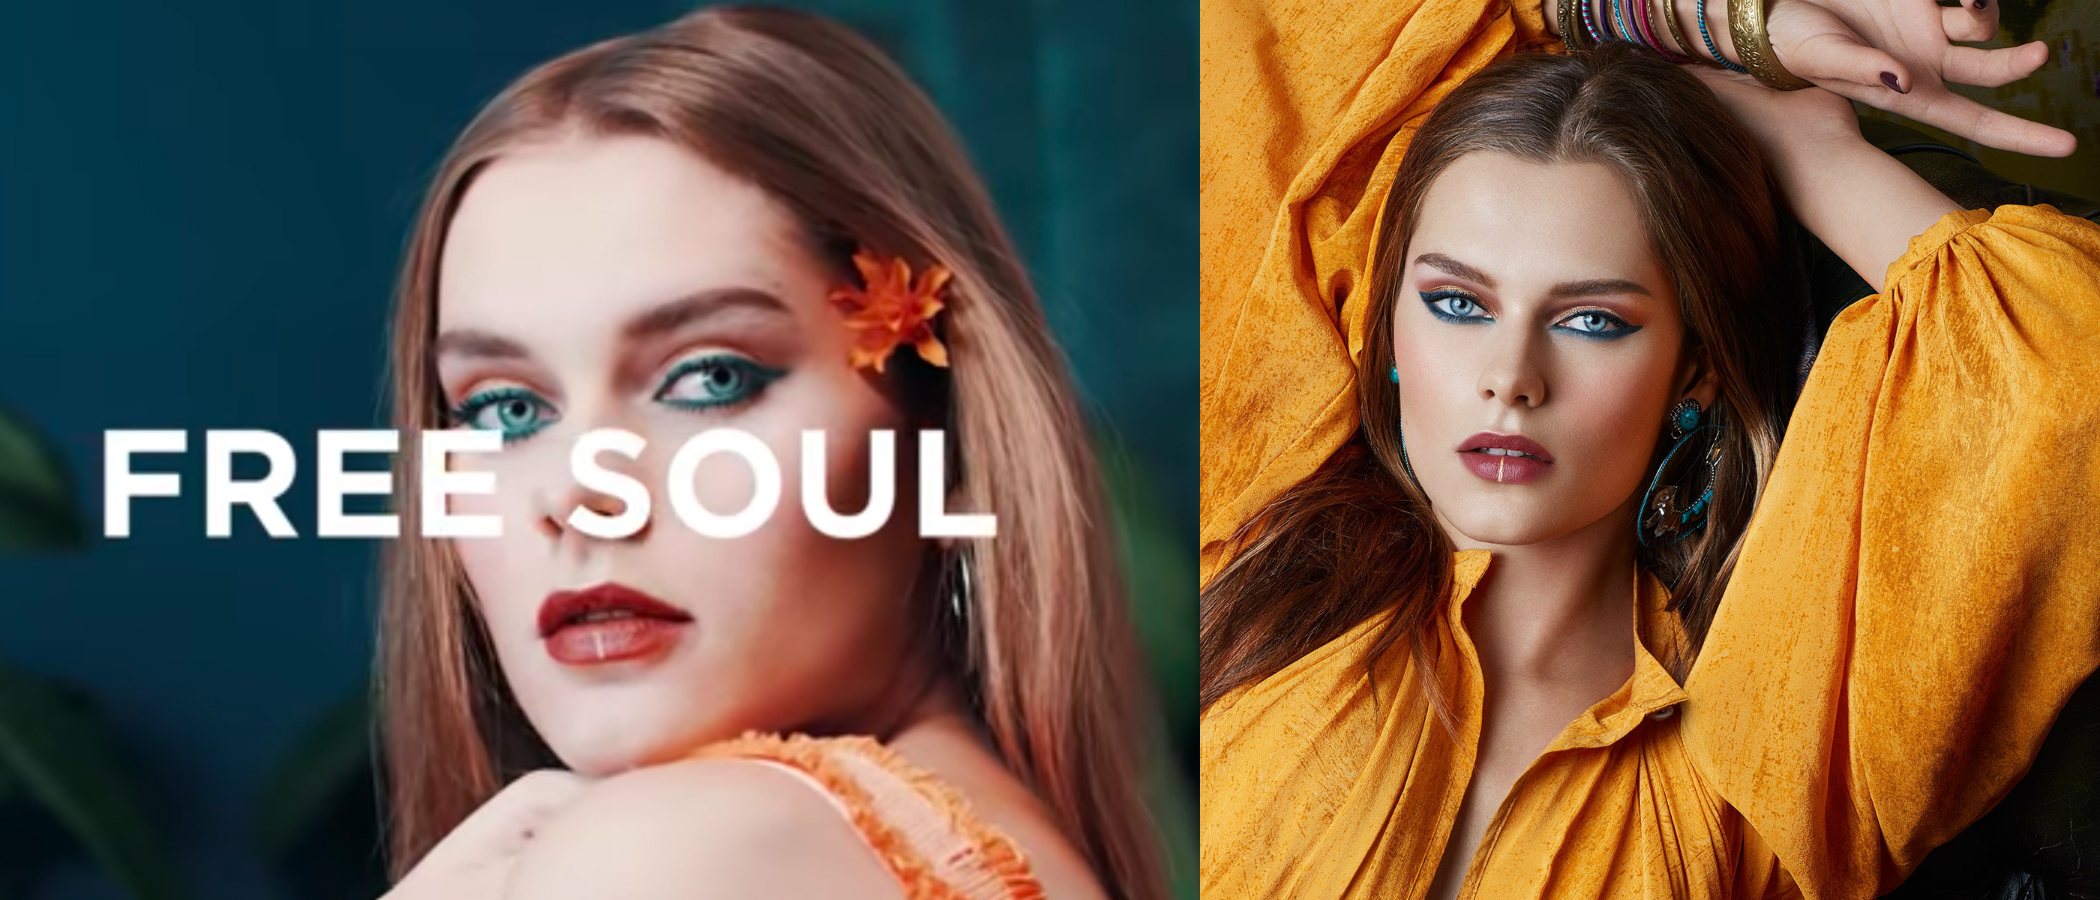 'Free Soul', la primaveral colección de maquillaje de Kiko en colaboración con el diseñador Ross Lovegrove